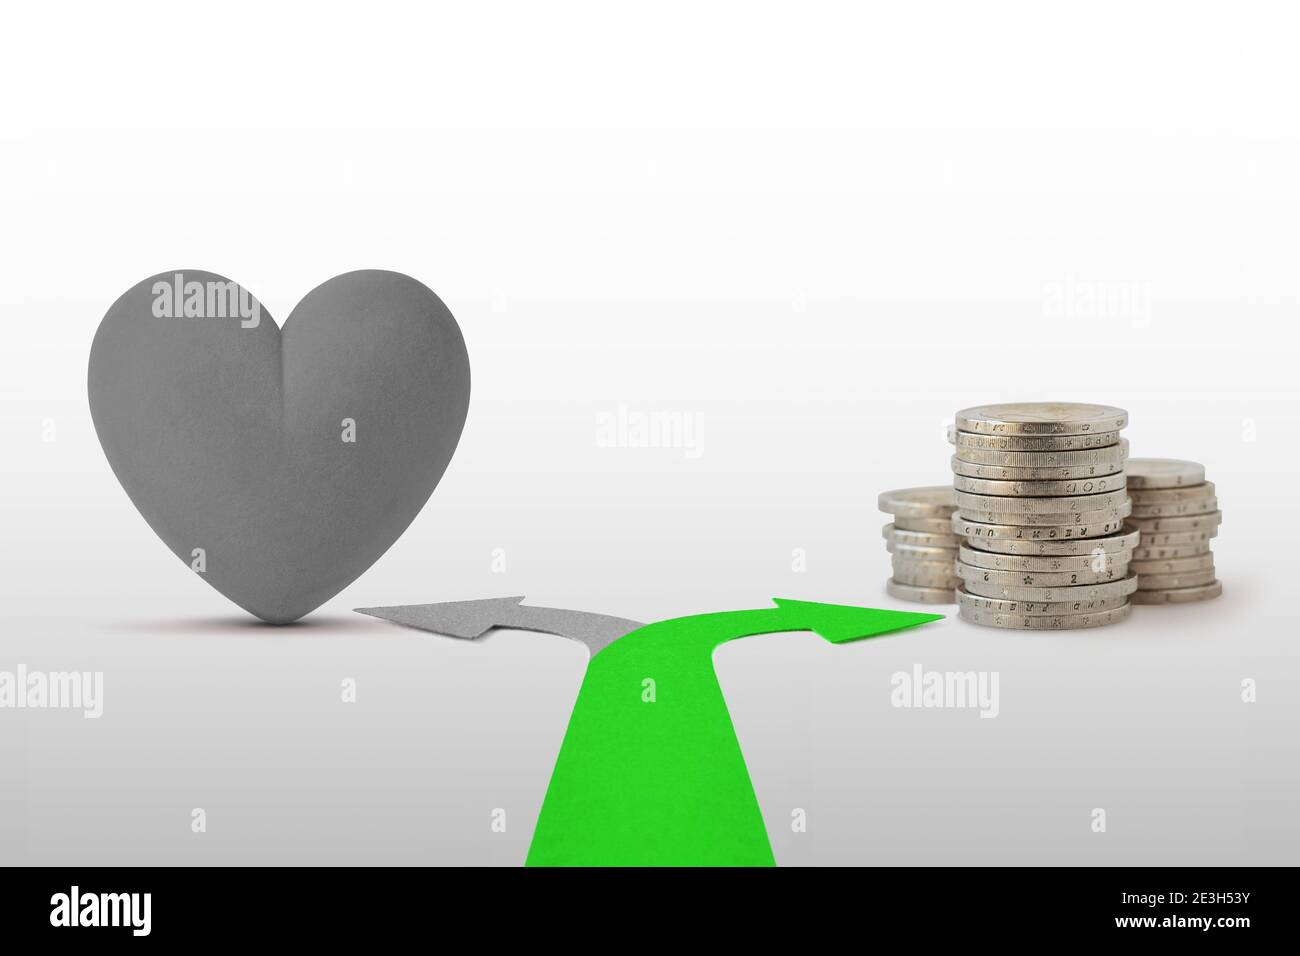 Zwei-Wege-Pfeile mit Herz und Münzen - Konzept Geld statt Liebe wählen Stockfoto